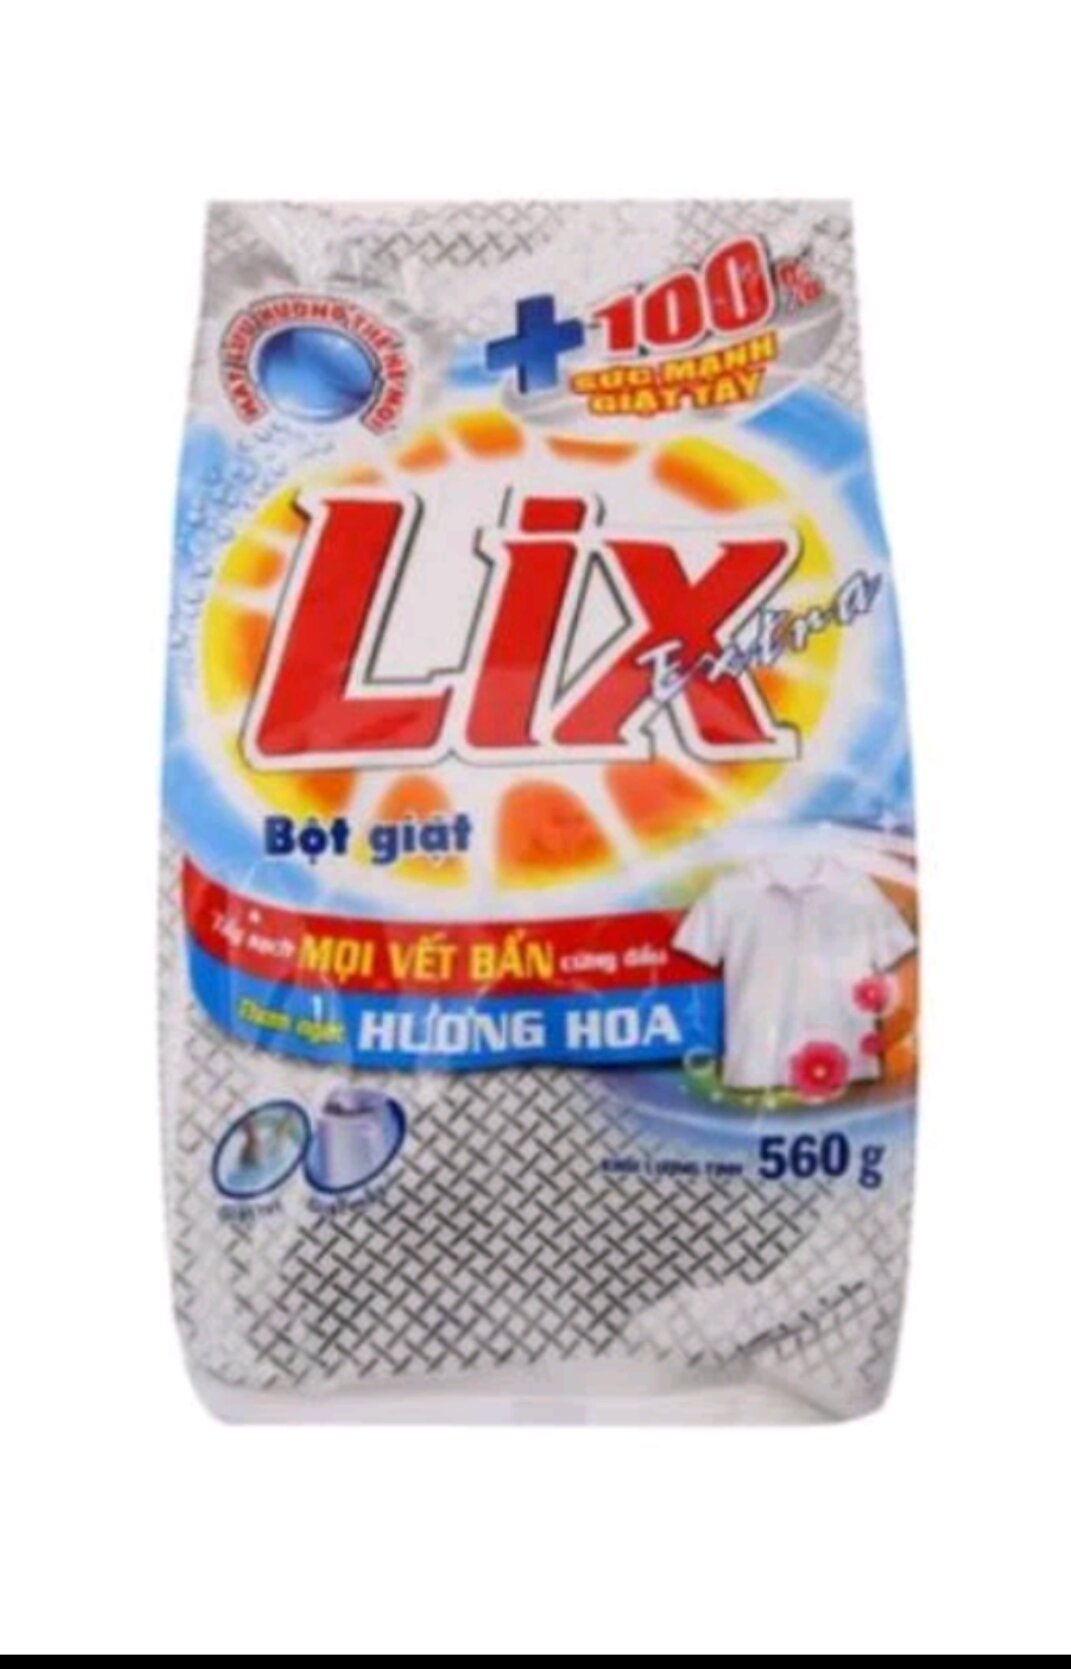 1 thùng bột giặt Lix extra 20 gói loại 56g